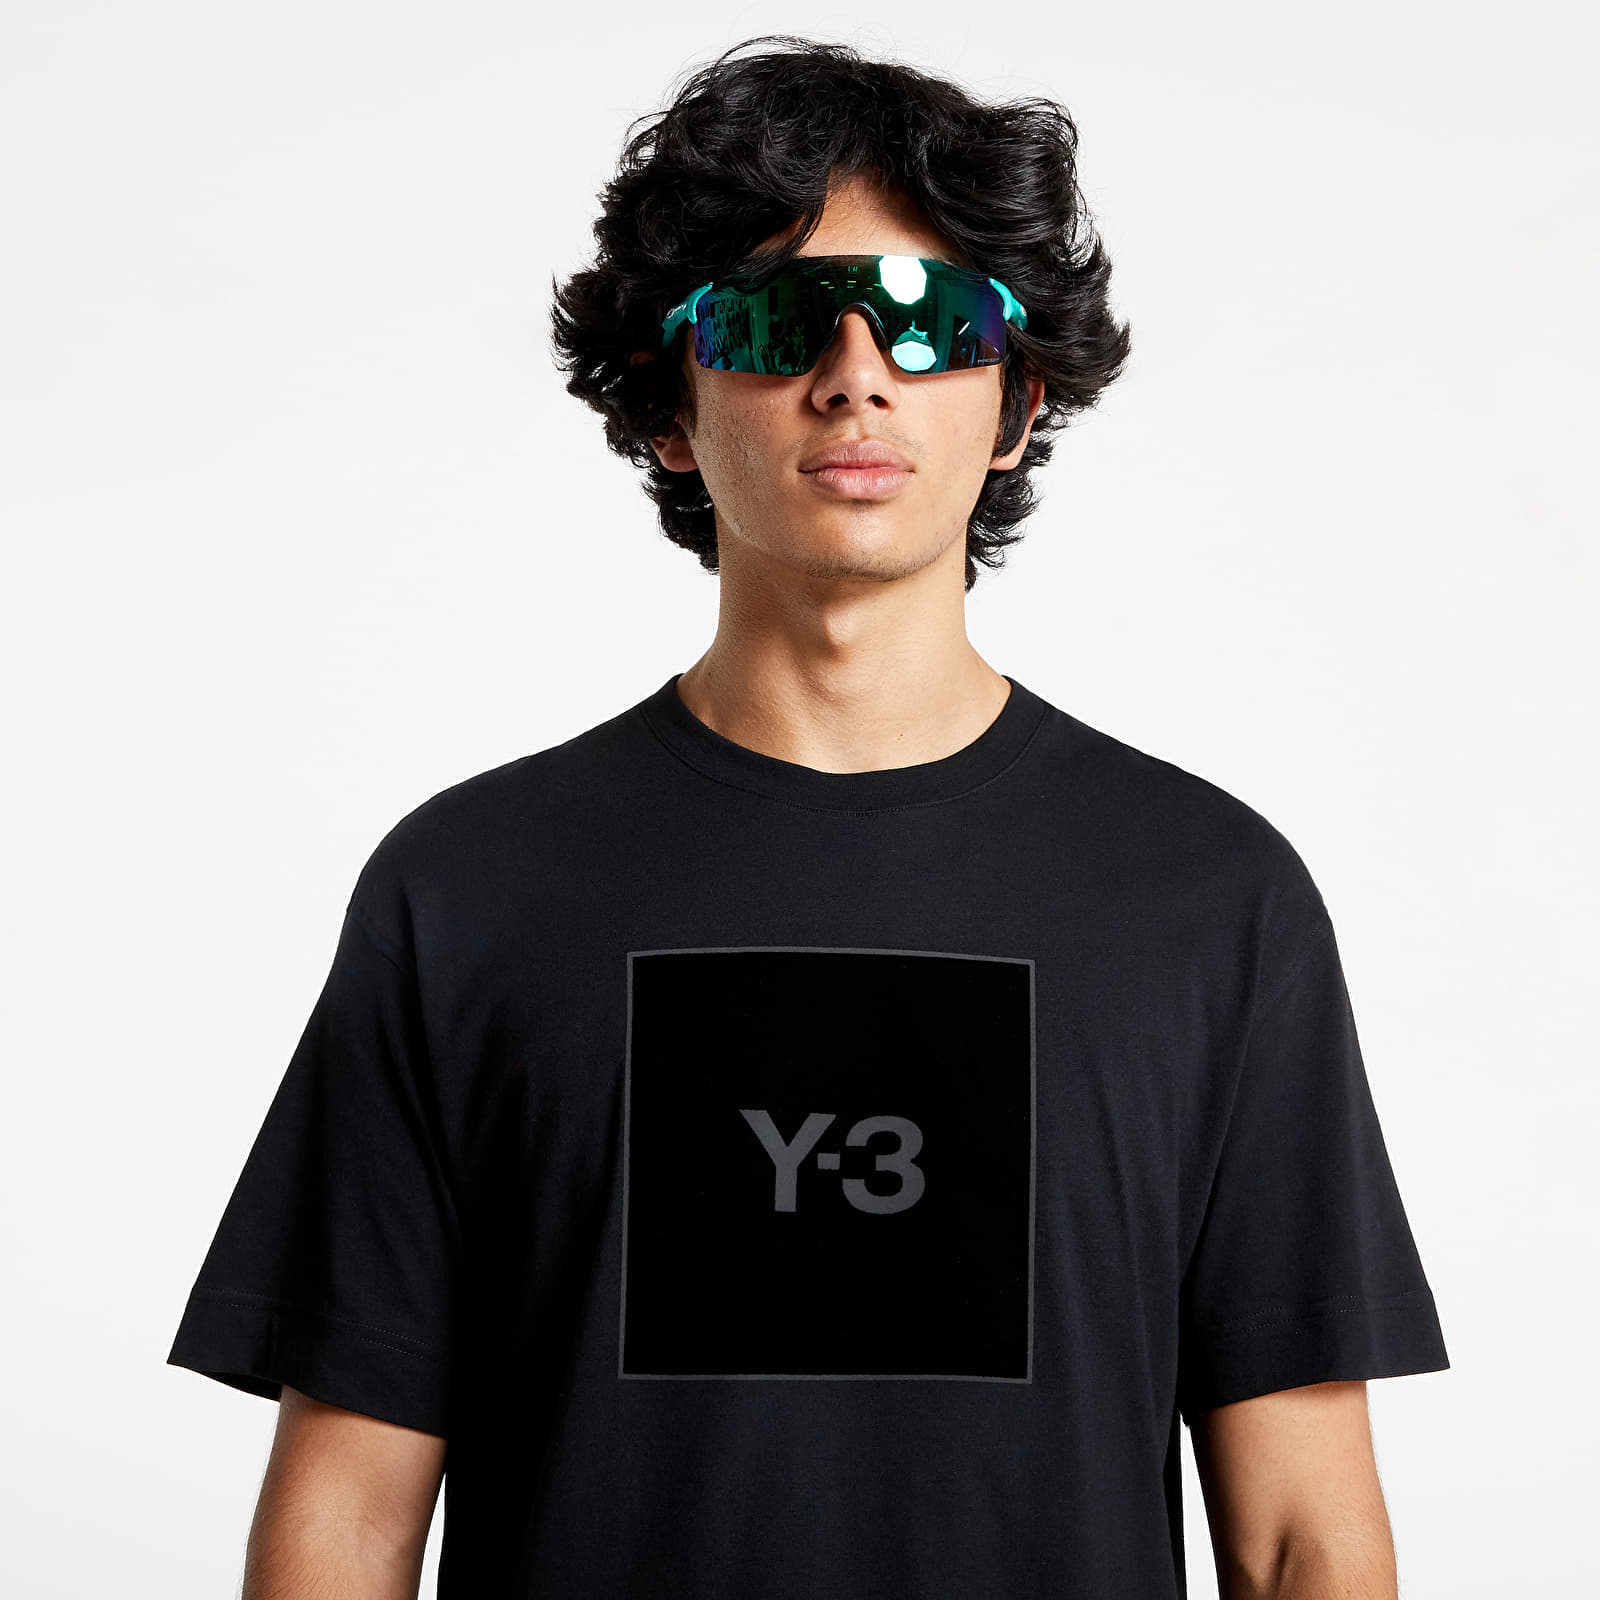  Μπλούζες Y-3 Square Label Graphic Short-Sleeved Tee Black